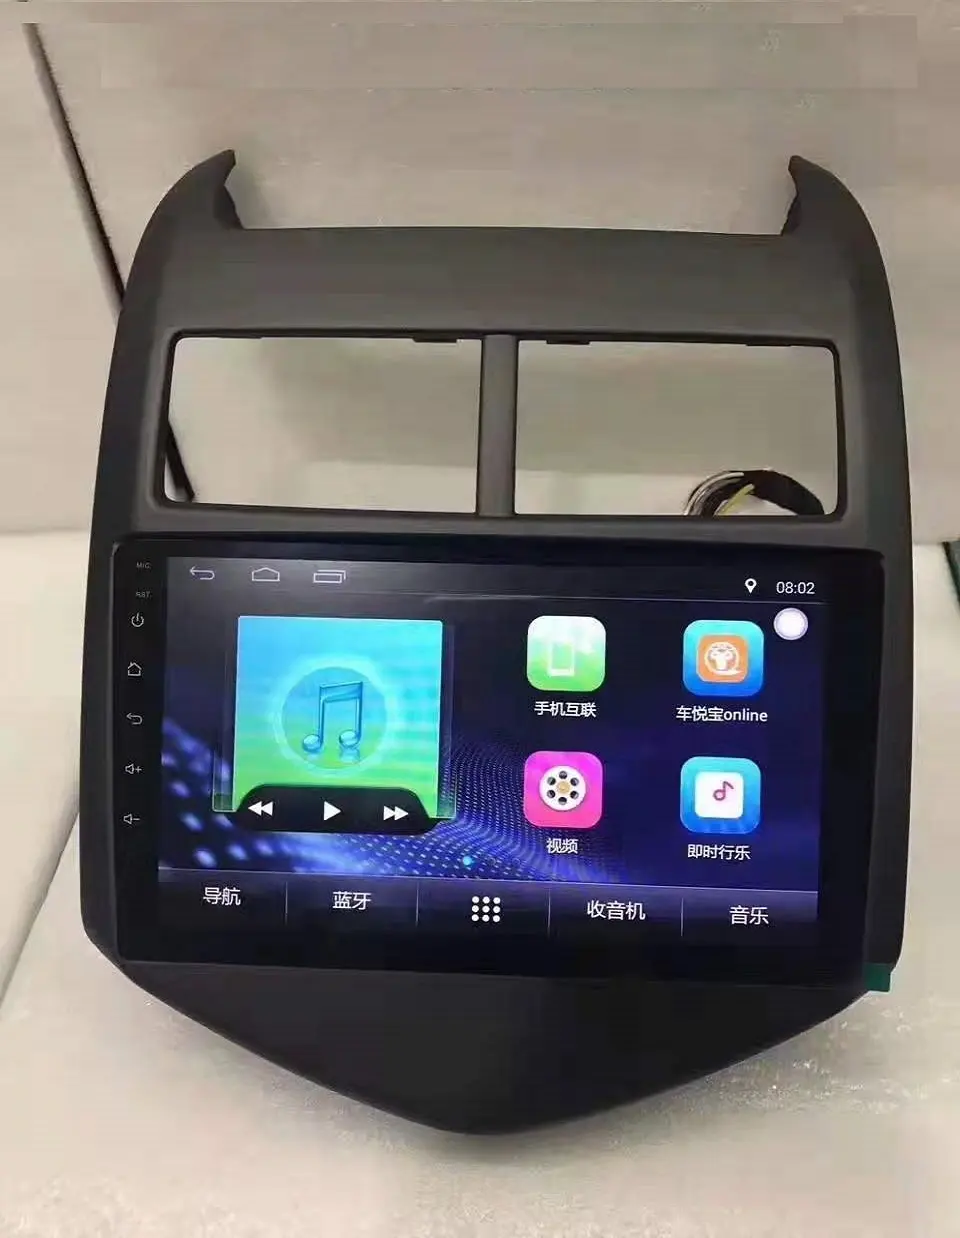 XinYoo автомобильный радиоплеер Android навигация для Chevrolet Aveo с радио видео USB Mirror link автомобильный DVD-плеер Автомобильный GPS MP5 плеер